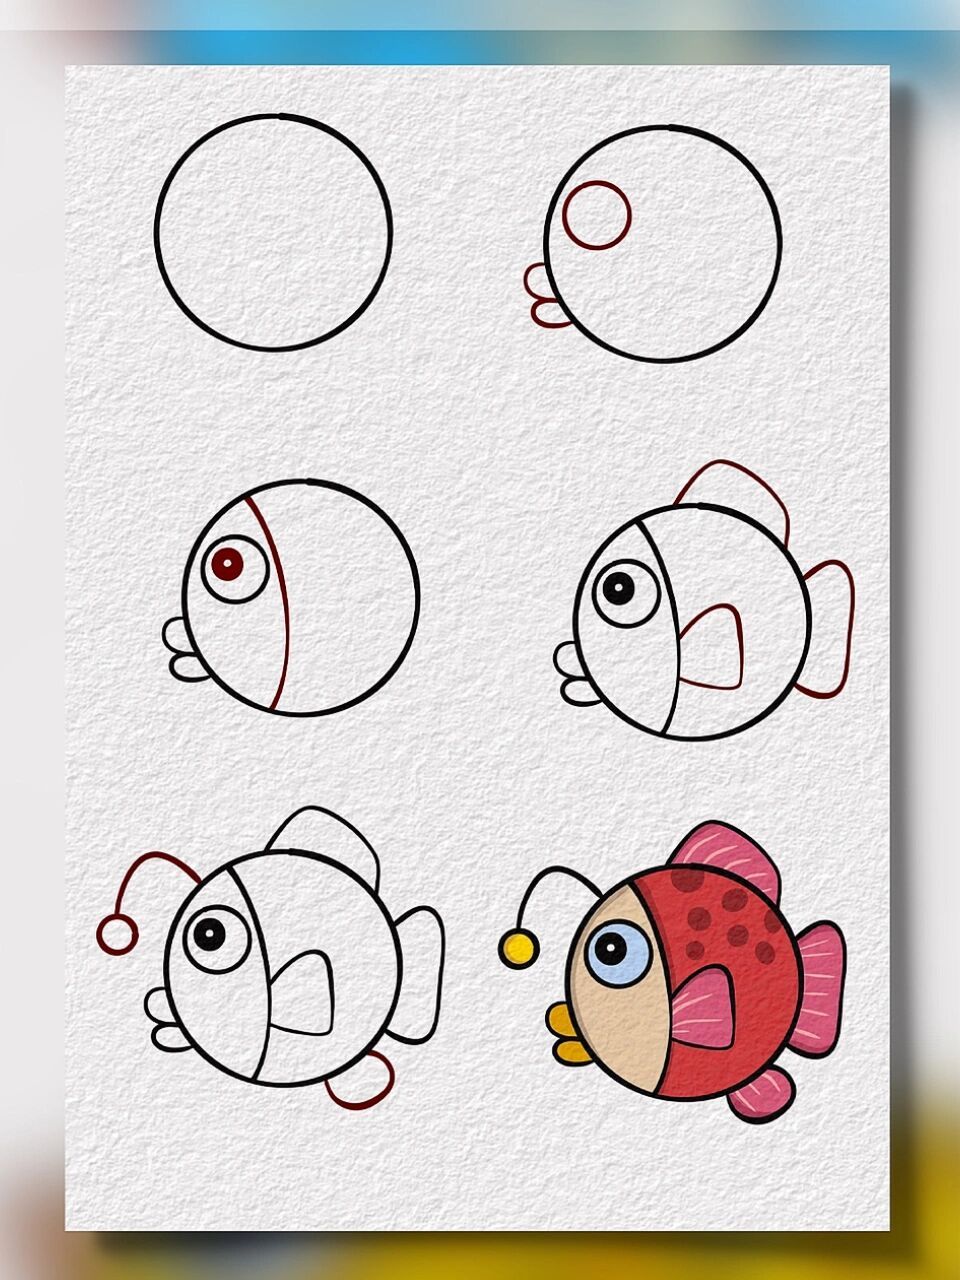 小鱼简笔画教程图片